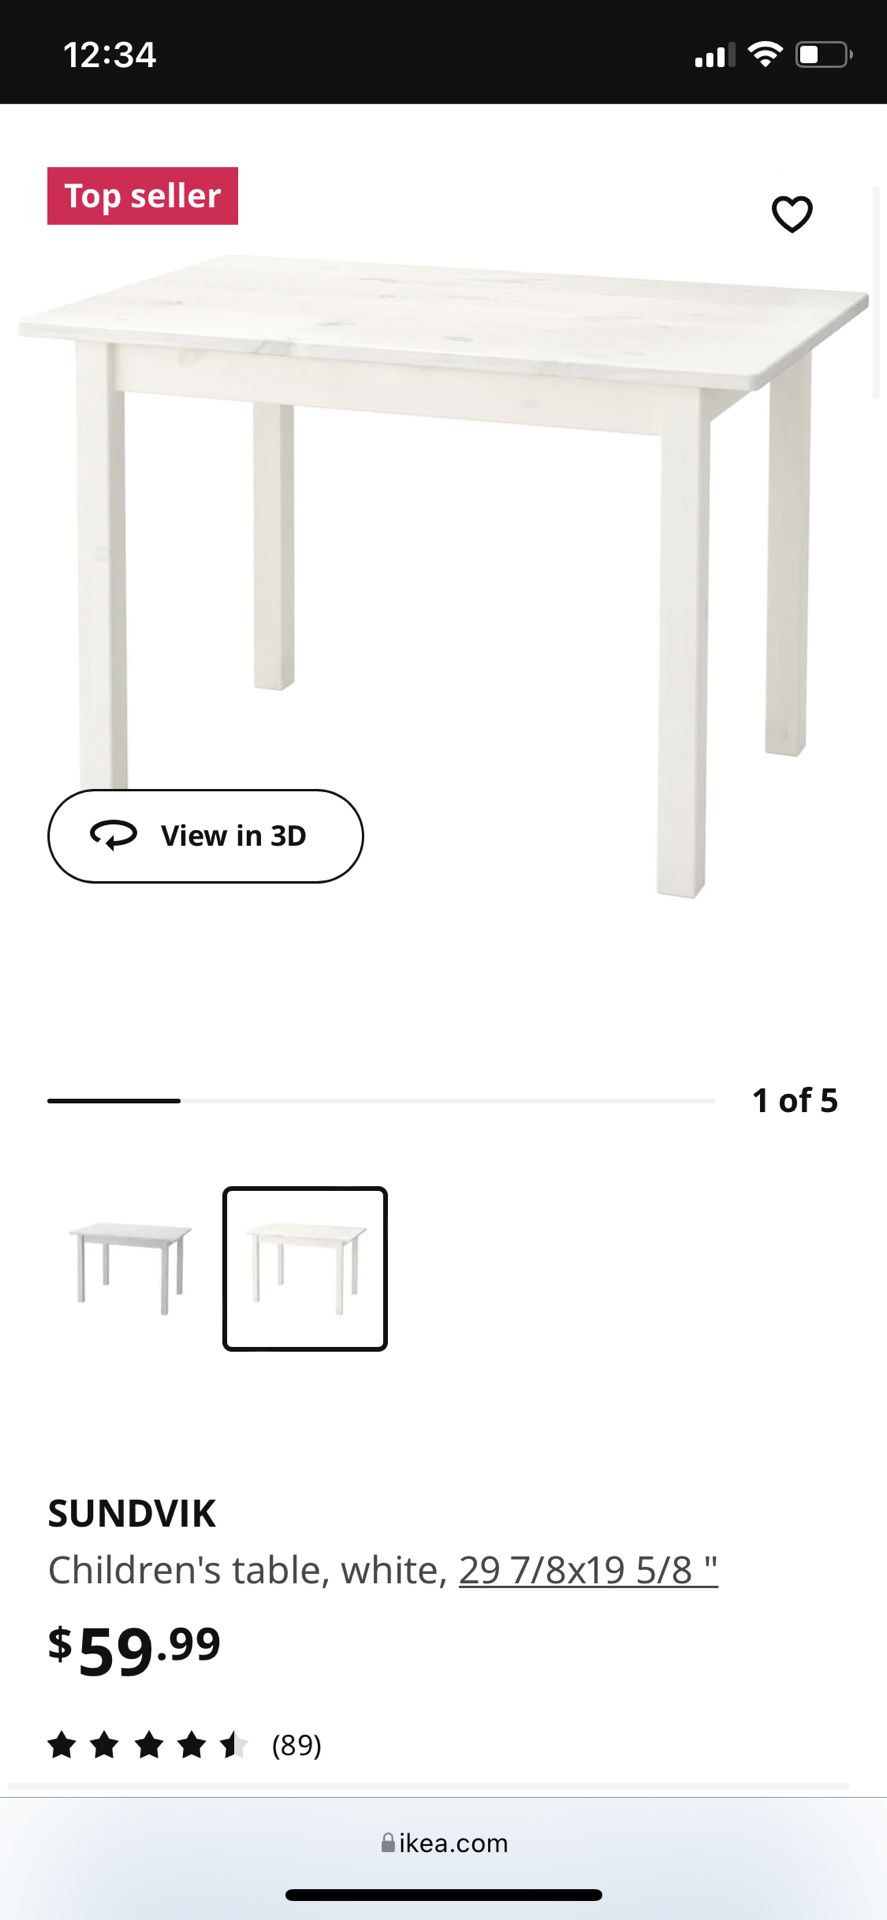 SUNDVIK Children's table, white, 29 7/8x19 5/8 - IKEA